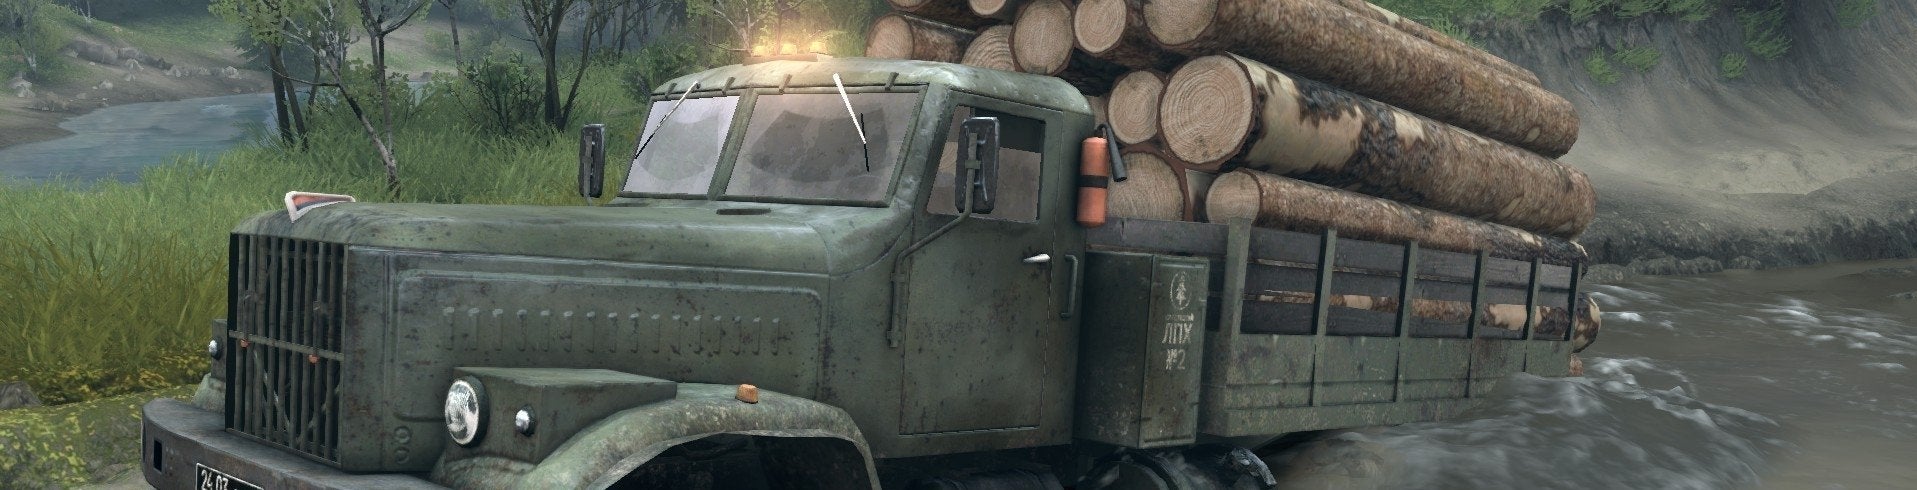 Image for Vychází plná verze Spintires: Off-road Truck Simulator